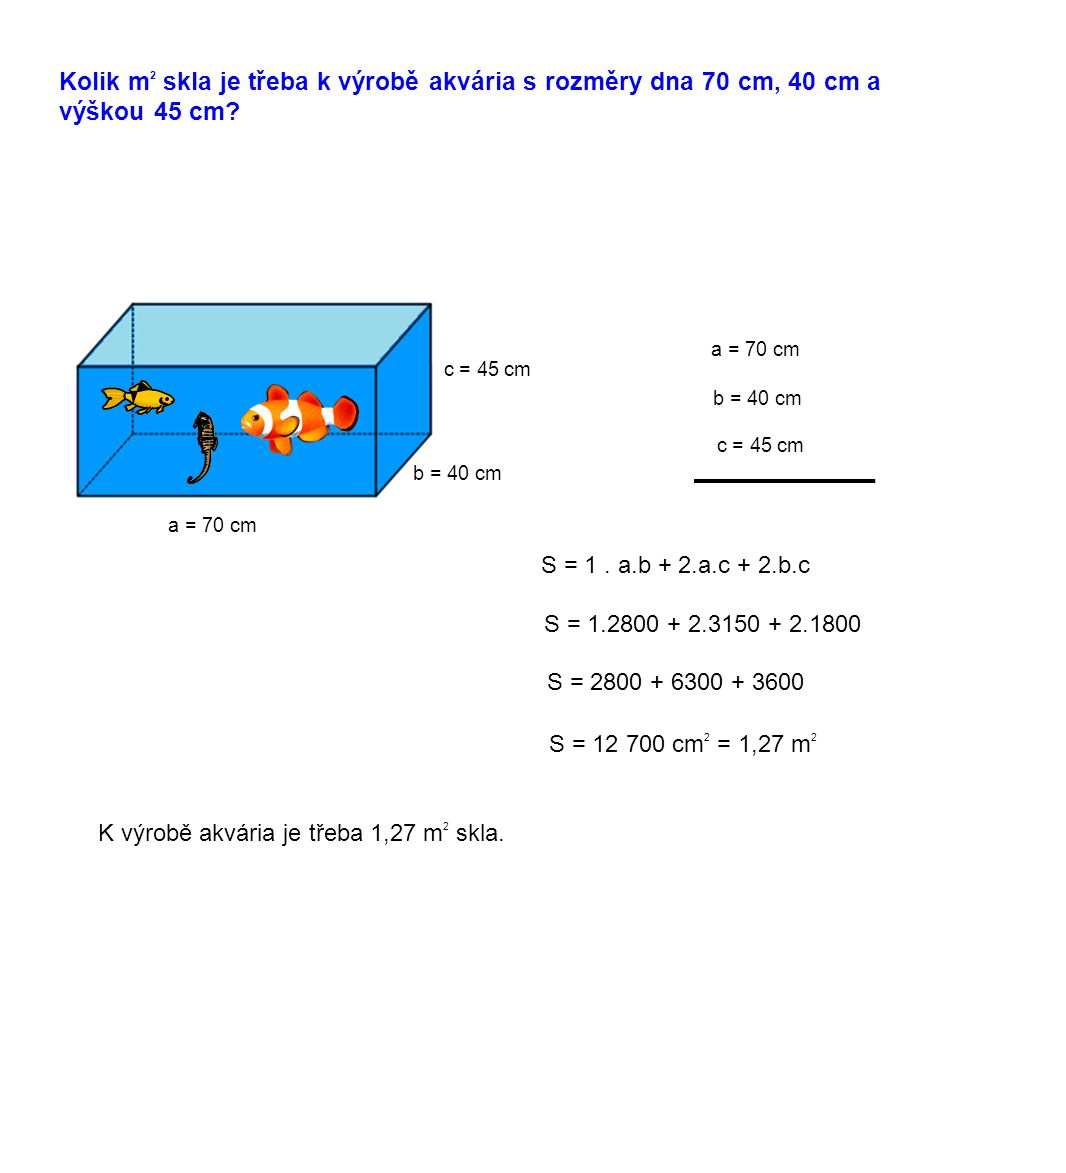 Kolik m2 skla je třeba k výrobě akvária s rozměry dna 70 cm, 40 cm a výškou 45 cm